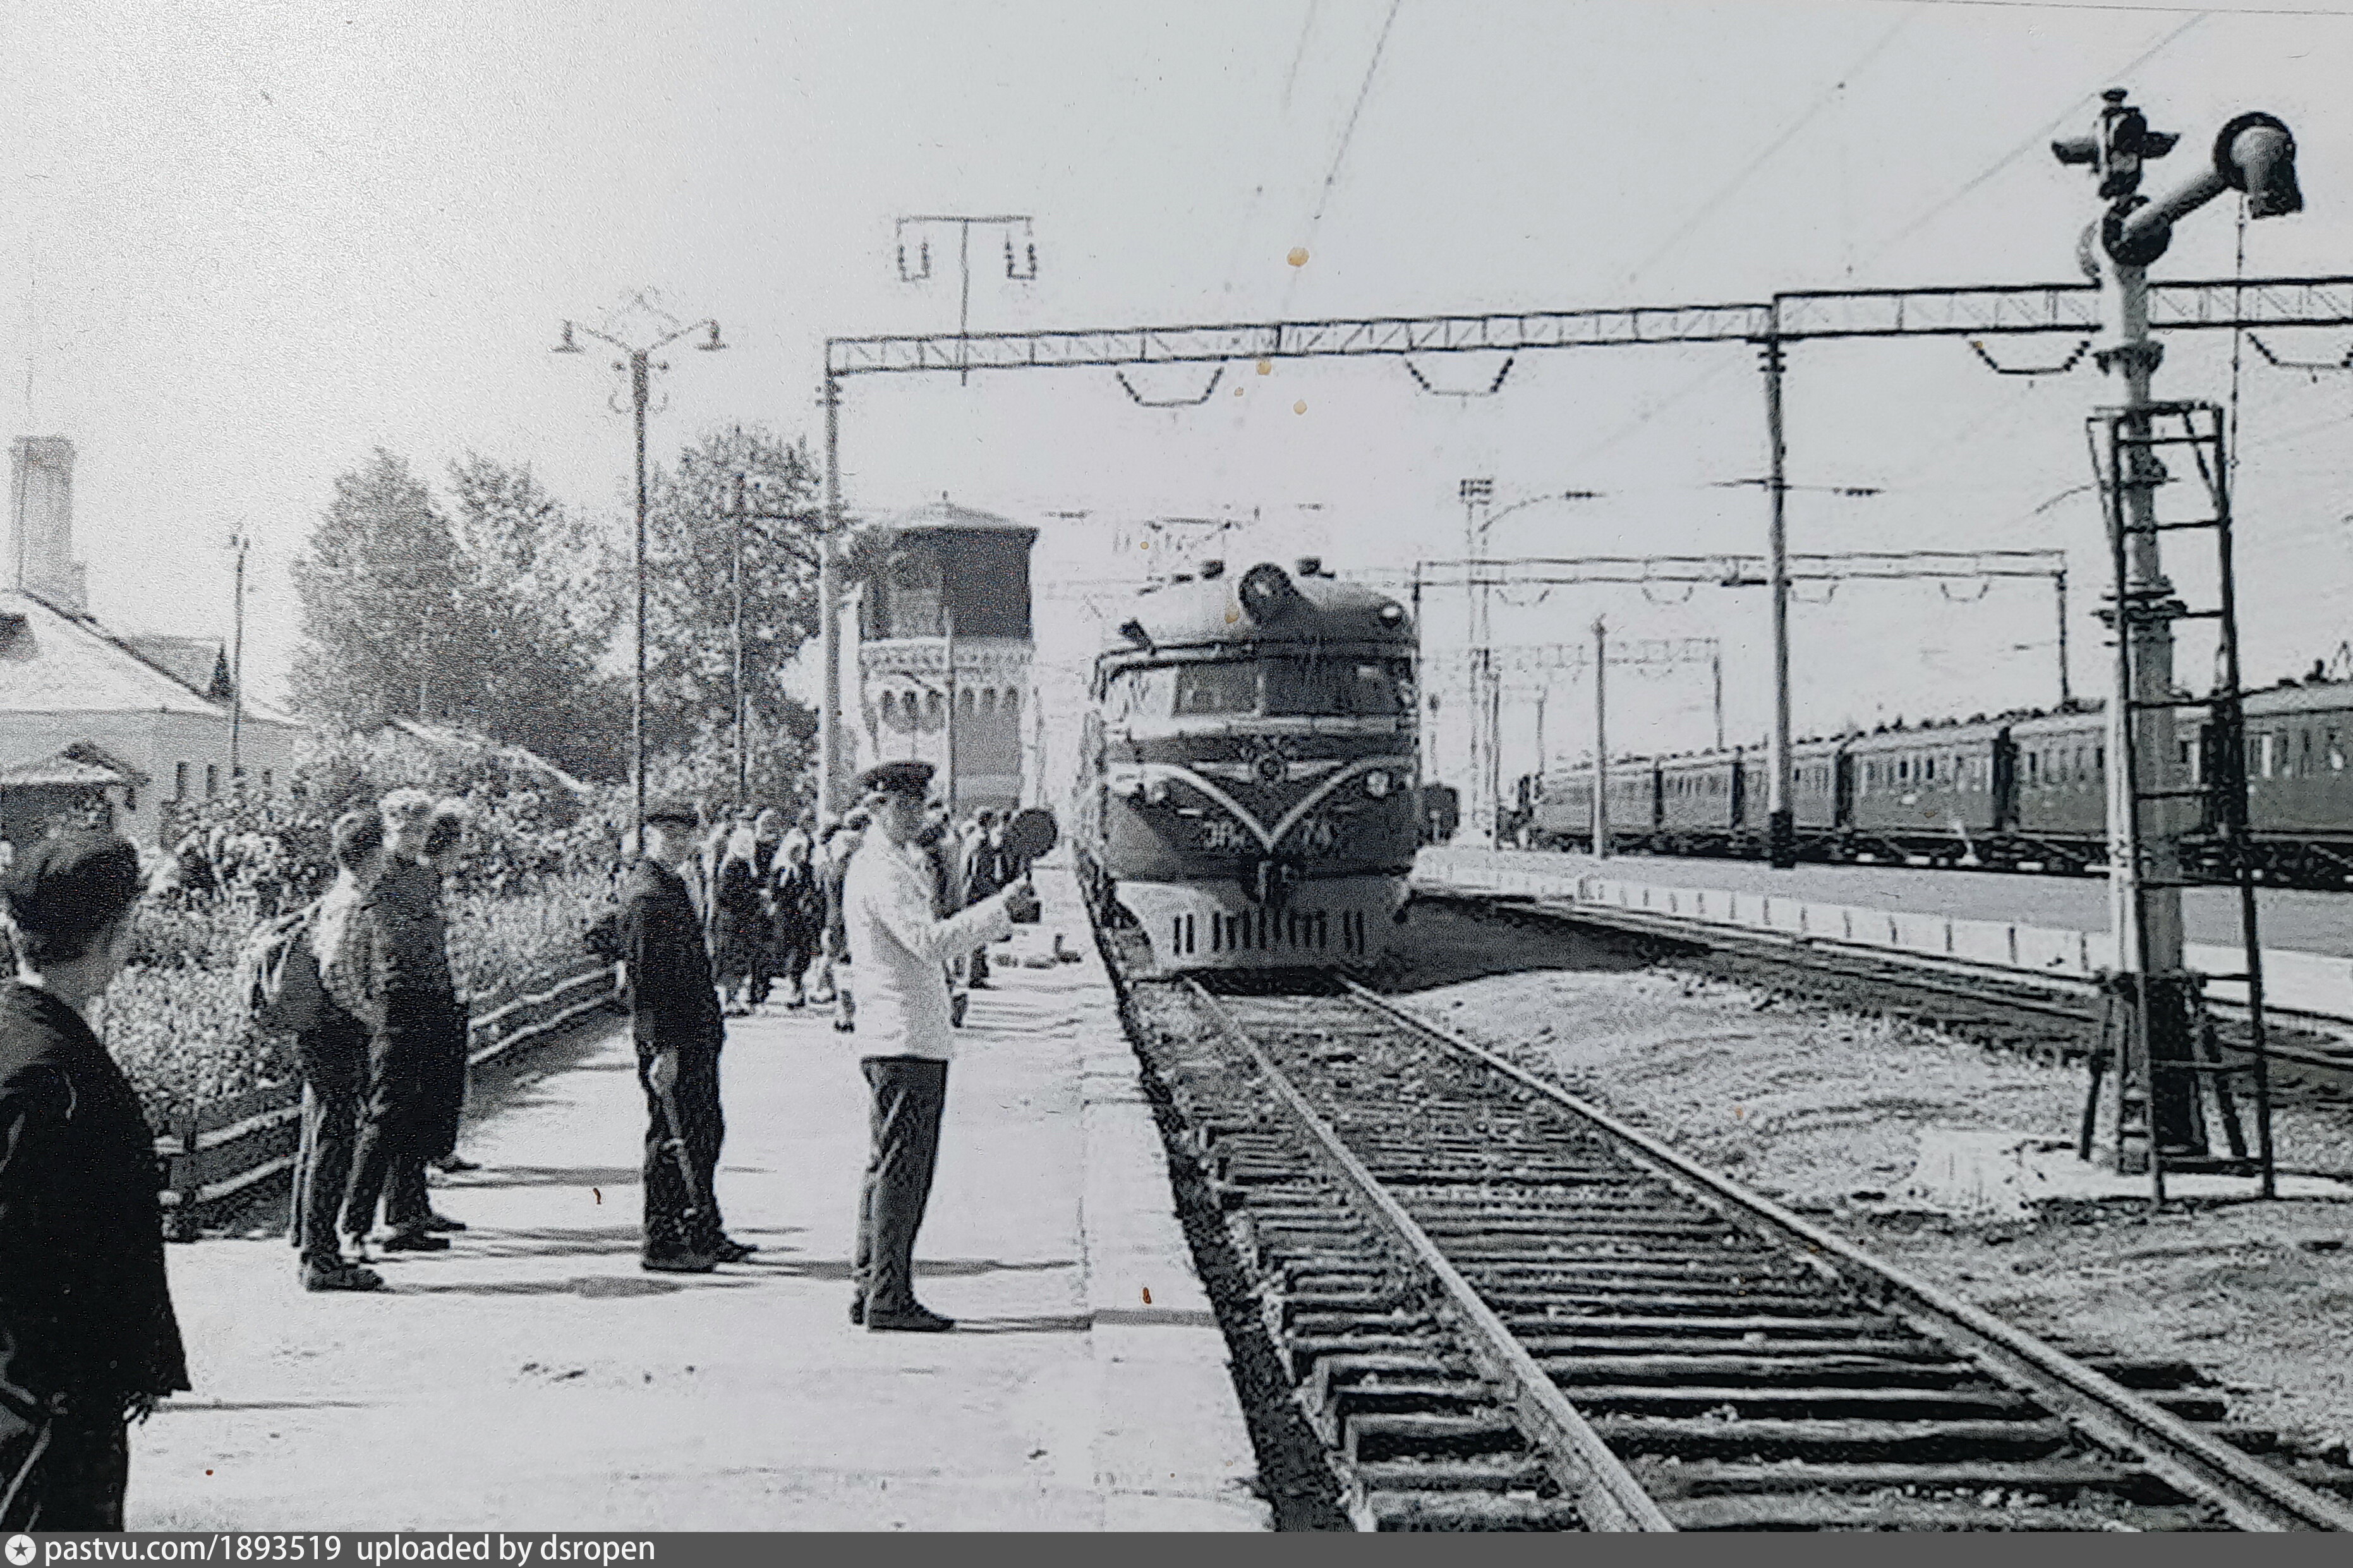 Пришли по прибытии поезда. Прибытие поезда на станцию Узловая. Прибытие поезда на станцию конечная. Прибытие поезда в Саров. Pastvu 1961320.